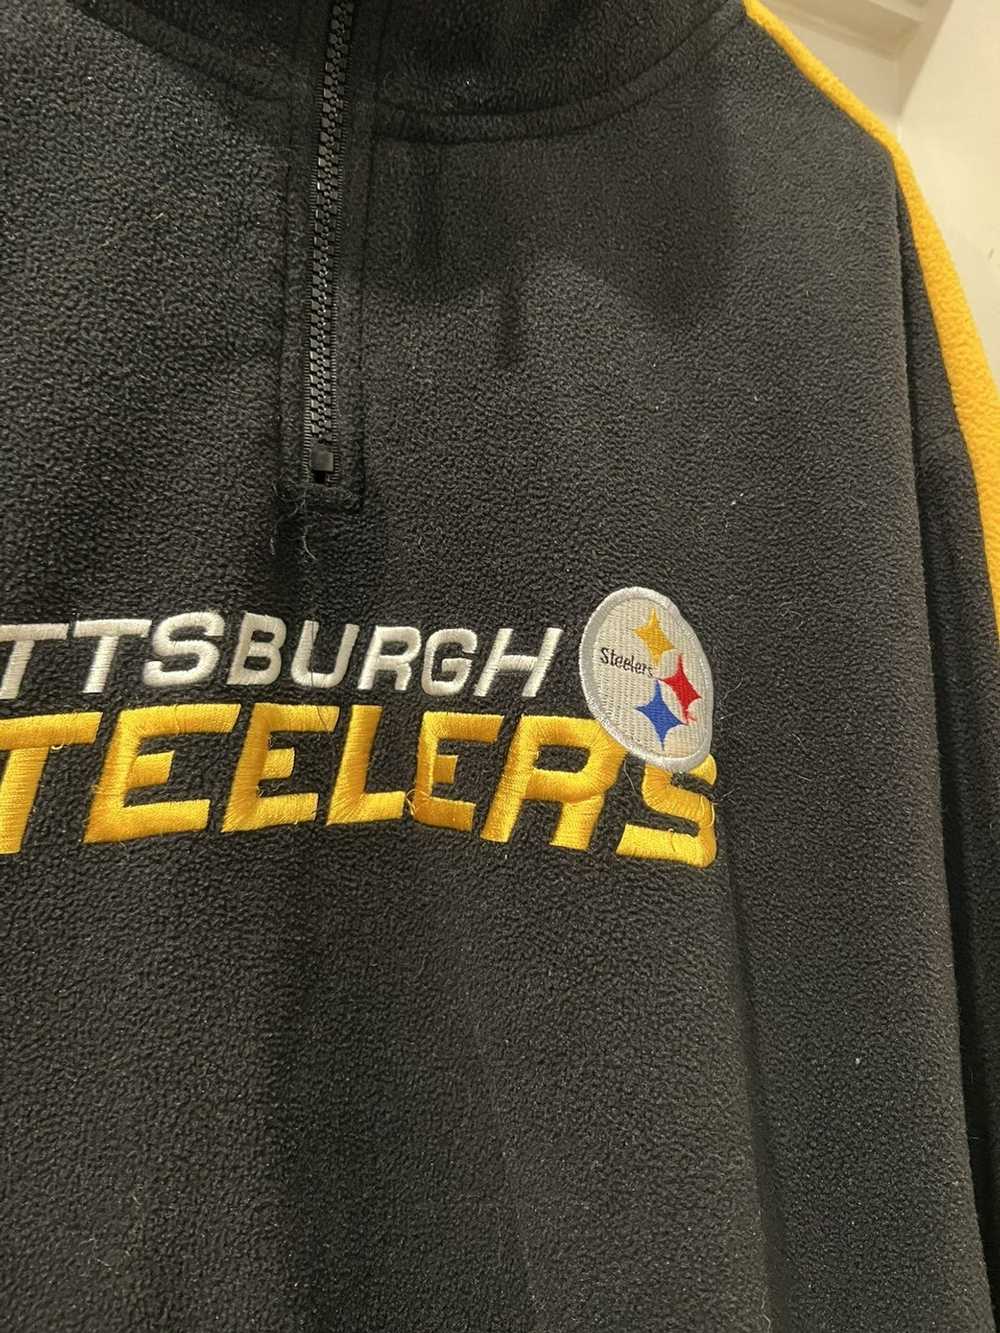 NFL × Reebok Vintage Pittsburgh Steelers Jacket - image 3